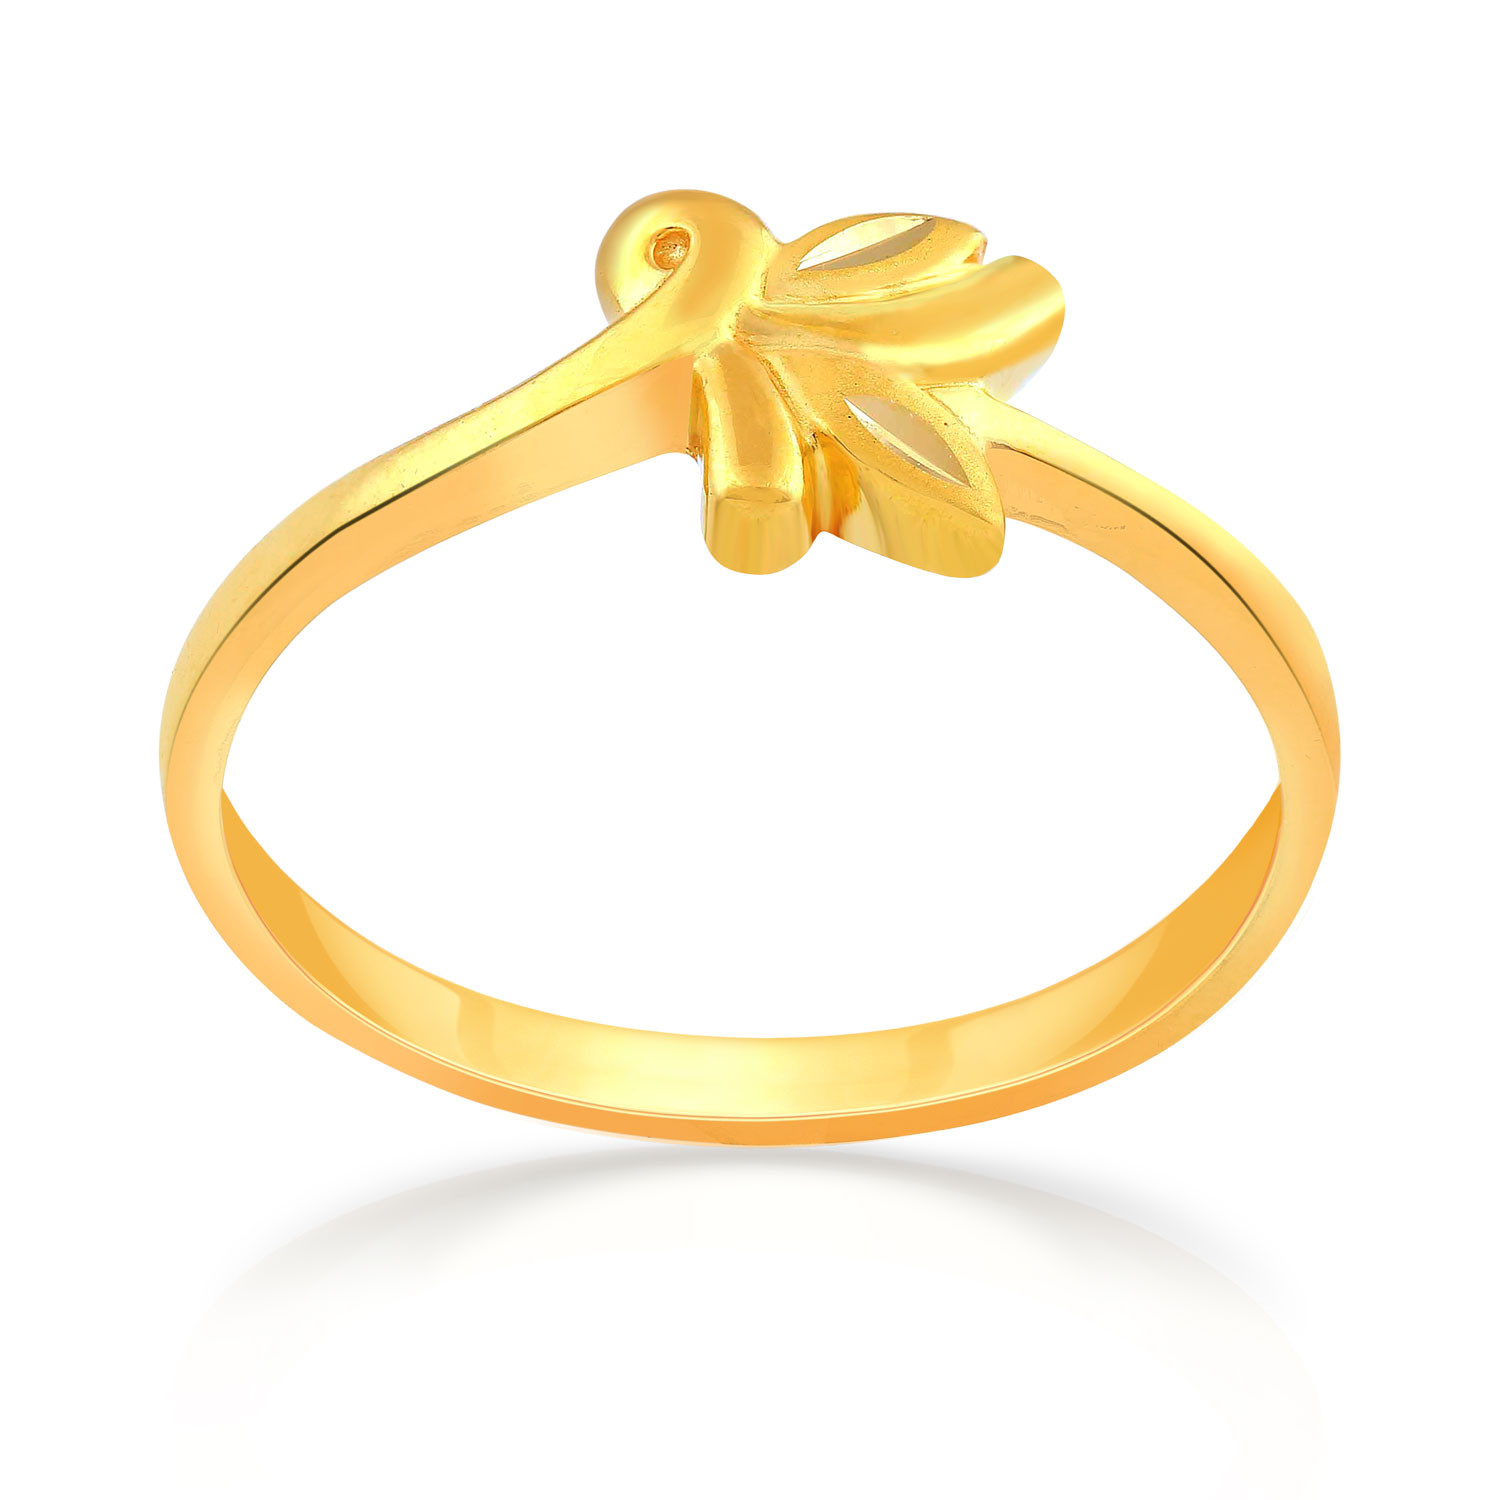 Buy Malabar Gold Ring MHAAAAAEICDM for Women Online | Malabar Gold ...